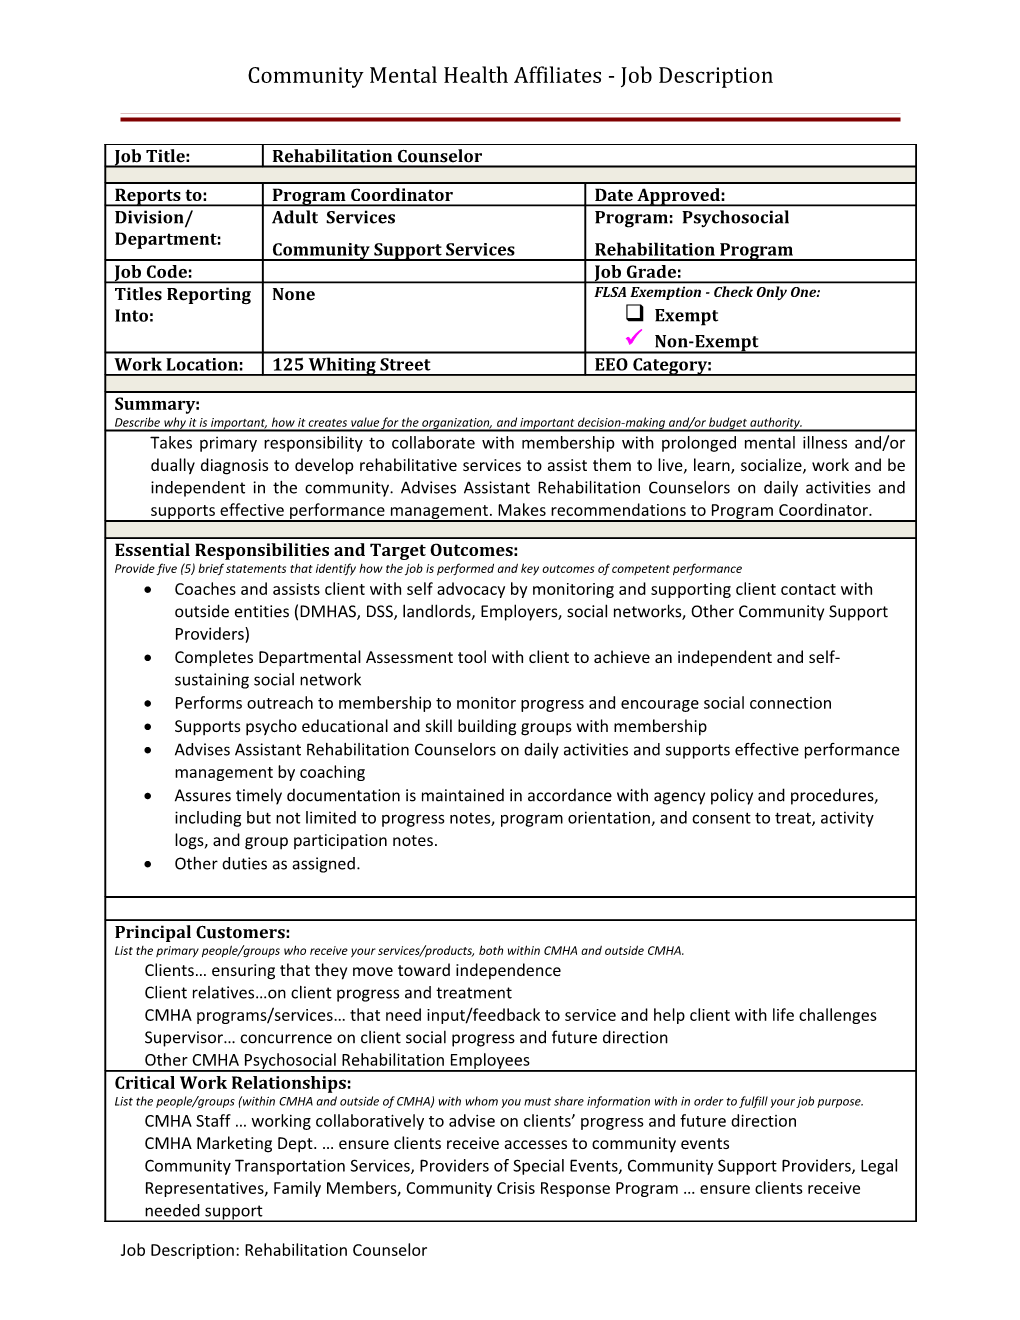 Community Mental Health Affiliates - Job Description